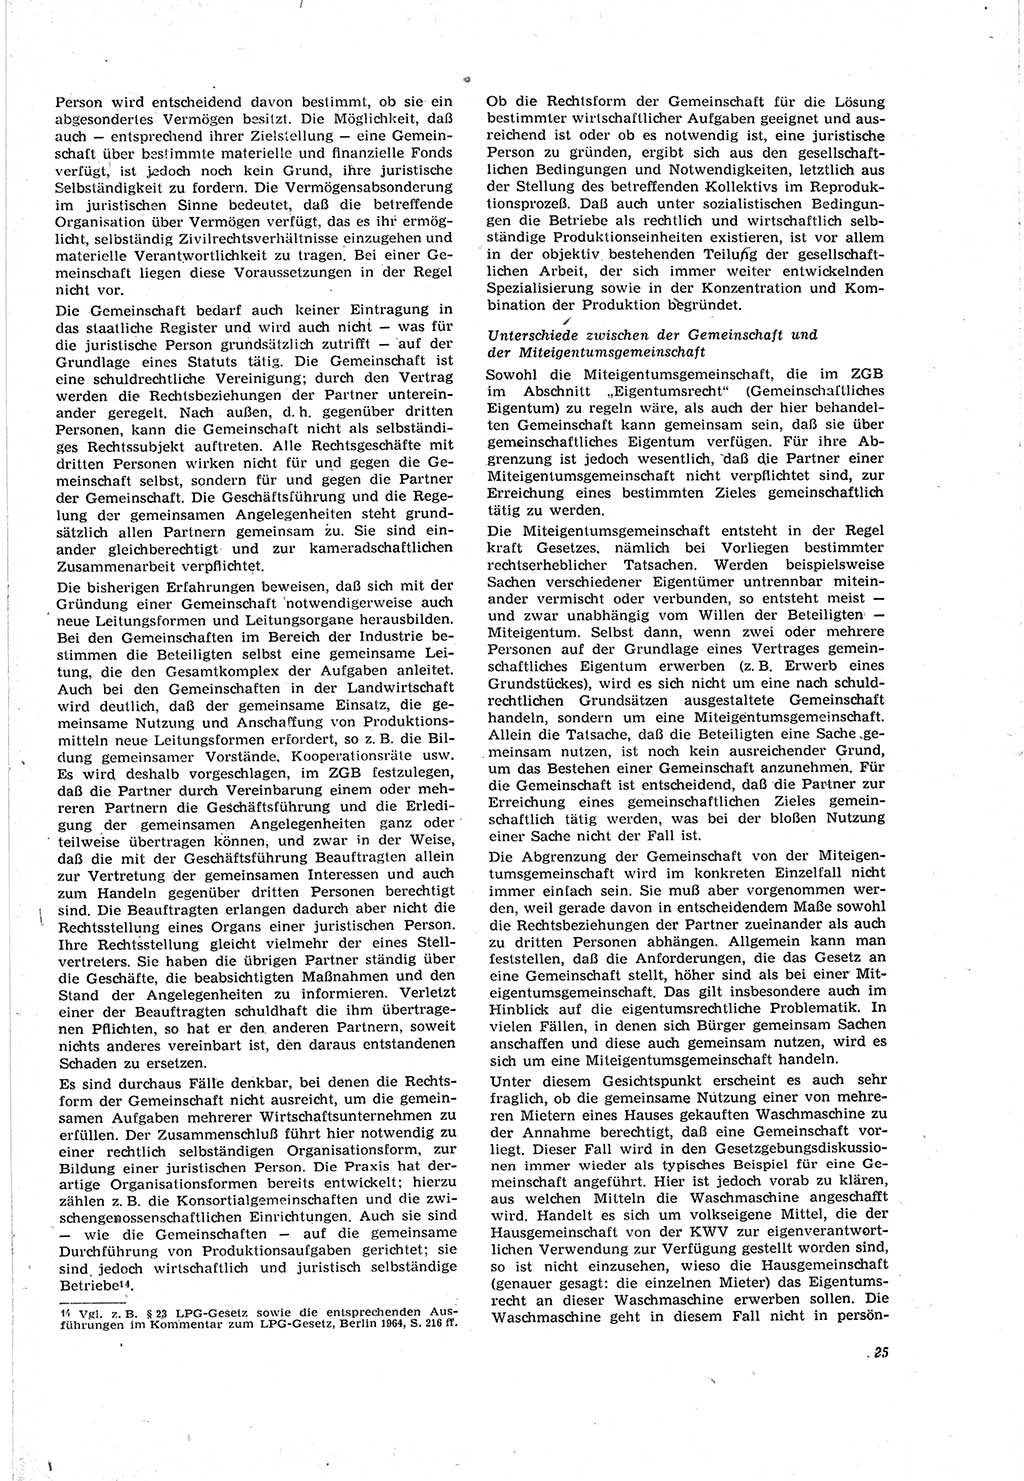 Neue Justiz (NJ), Zeitschrift für Recht und Rechtswissenschaft [Deutsche Demokratische Republik (DDR)], 20. Jahrgang 1966, Seite 25 (NJ DDR 1966, S. 25)